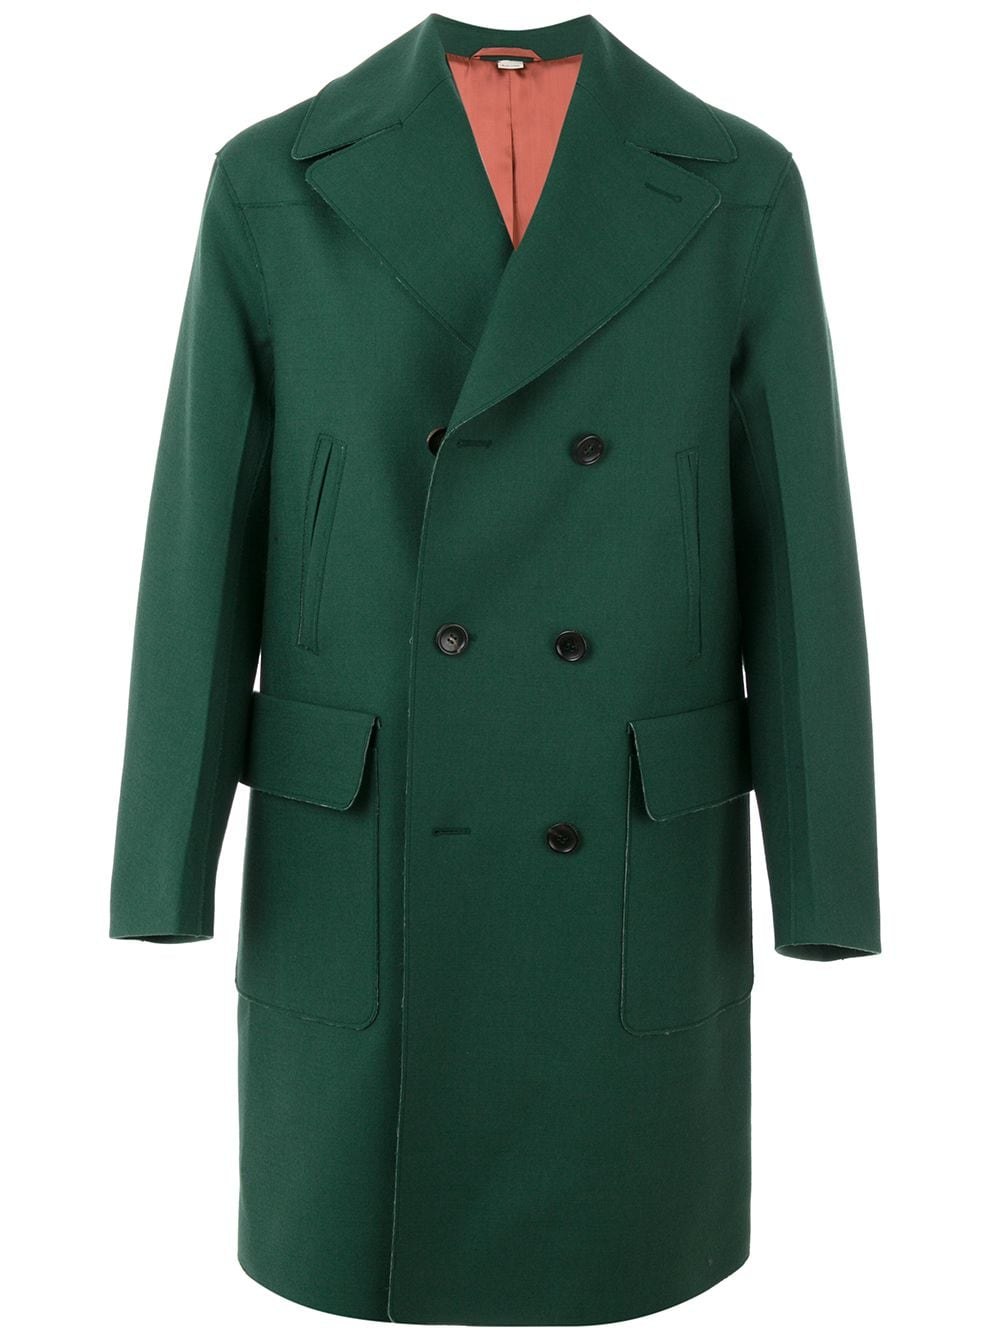 Болотное пальто. Maag пальто мужское зеленое. J.Limberg пальто мужское зелёное. Темнрзеленое пальто мужское. Зеленое пальто мужское длинное.